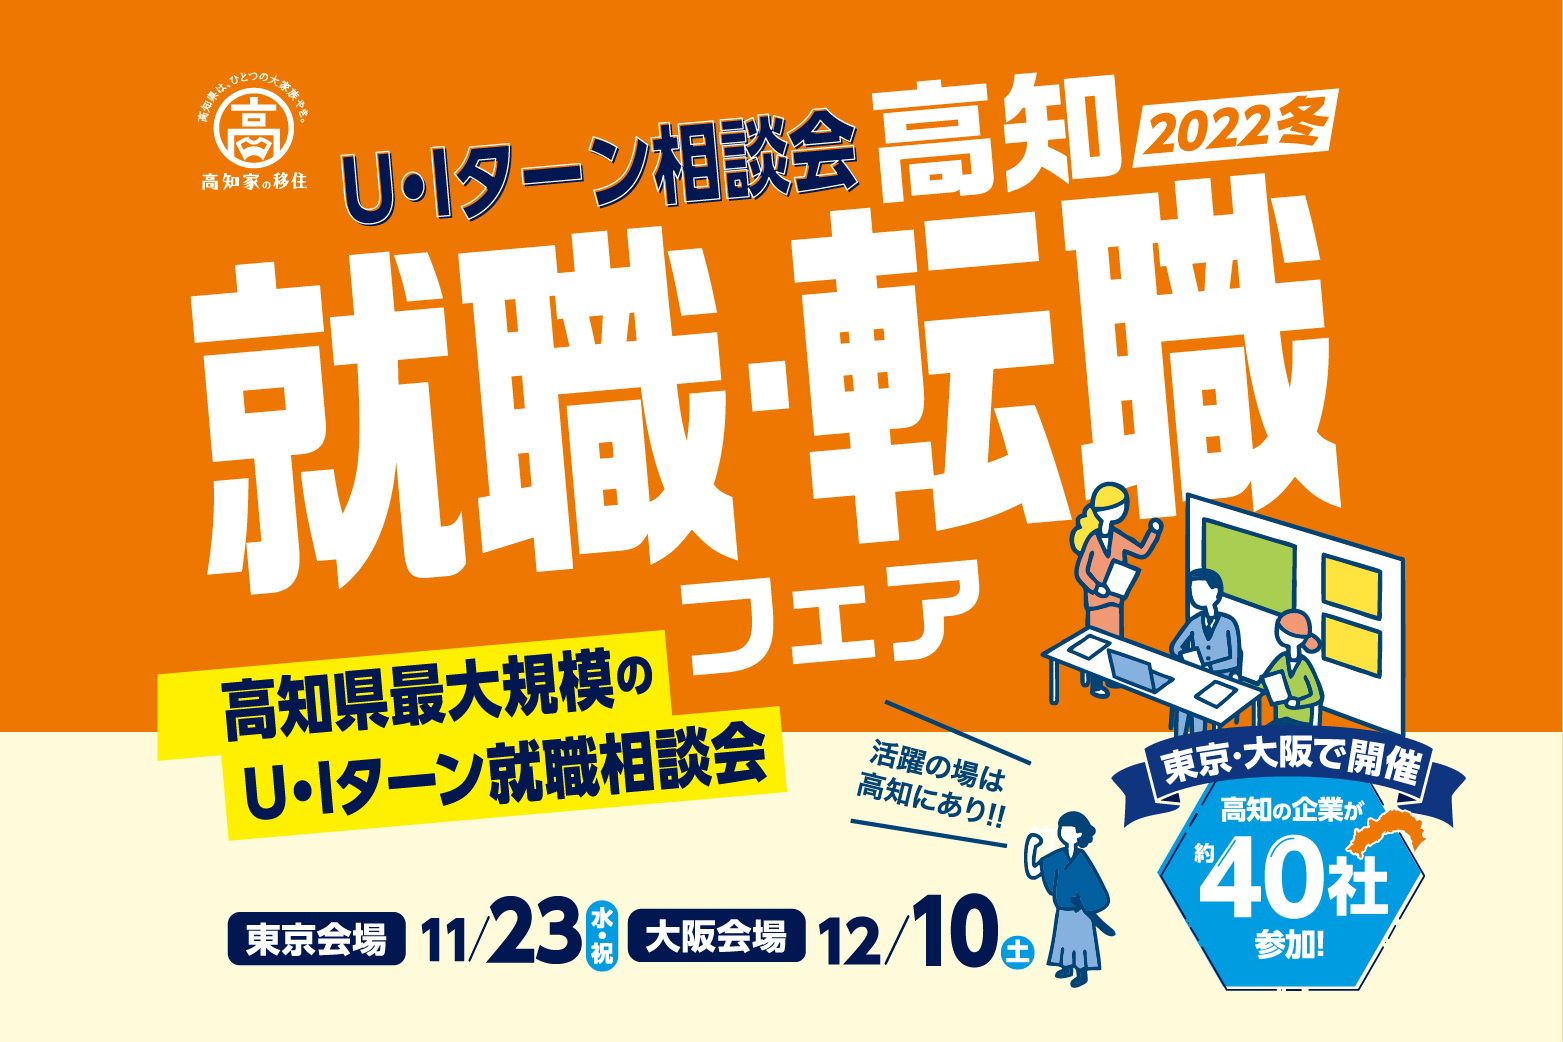 【東京11/23・大阪12/10】「高知就職・転職フェア2022冬」開催！高知県最大規模のU･Iターン相談会です